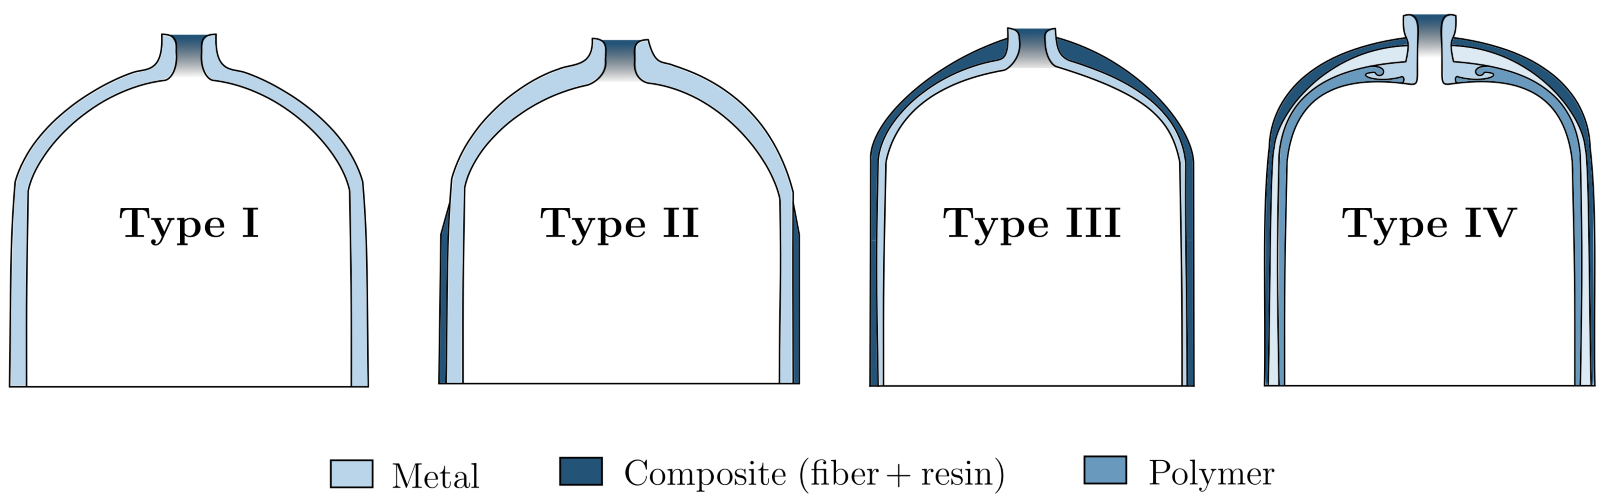 types of hydrogen storage